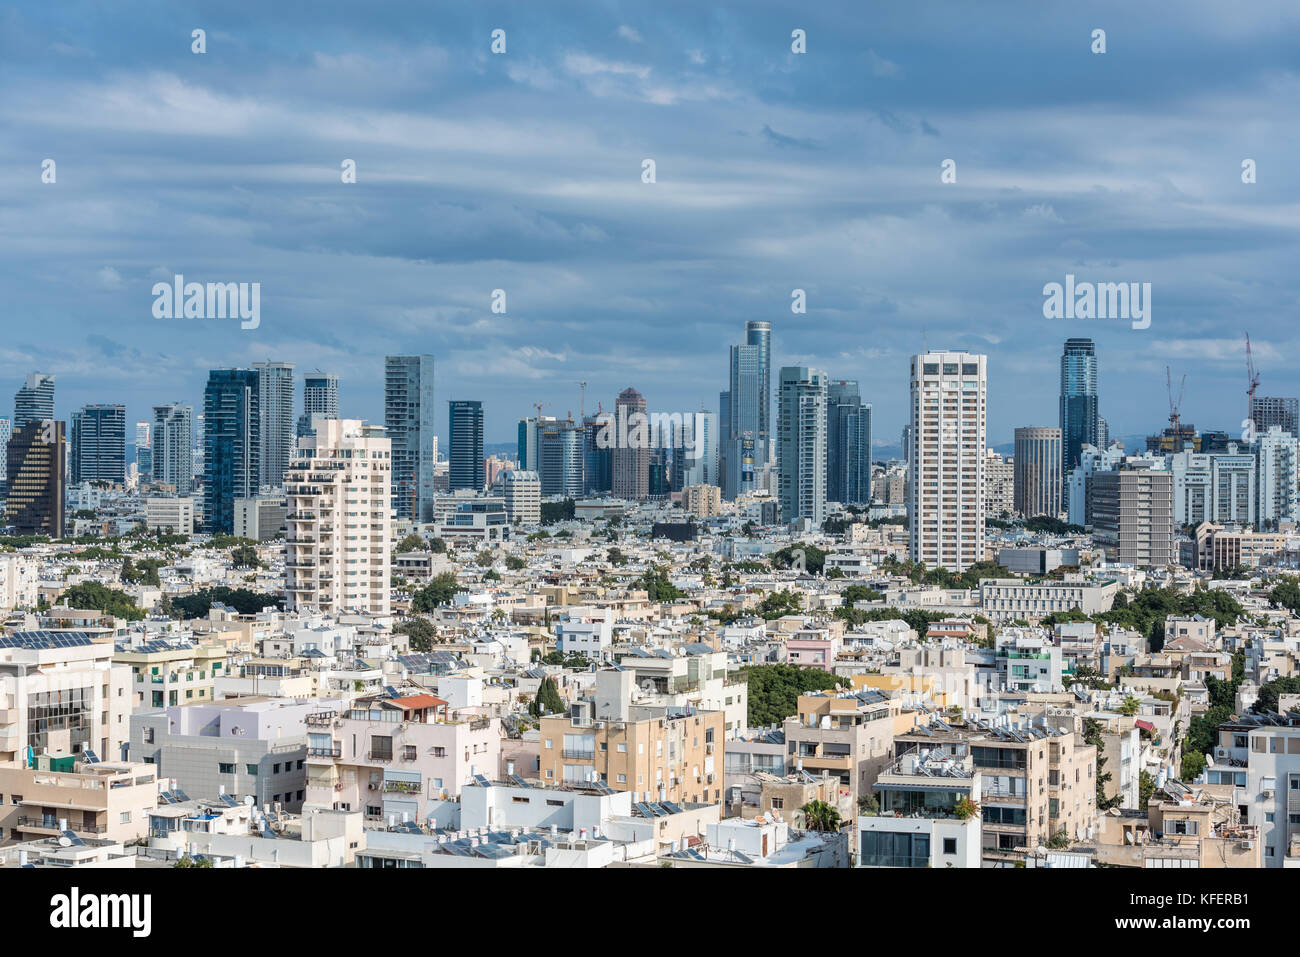 Israel, Tel Aviv-Yafo - Oktober 28, 2017: Stadtbild von Tel Aviv-Jaffa. Tel Aviv ist für seine jüngste Entwicklung als Drehscheibe in Hochhäusern durch festgestellt Stockfoto